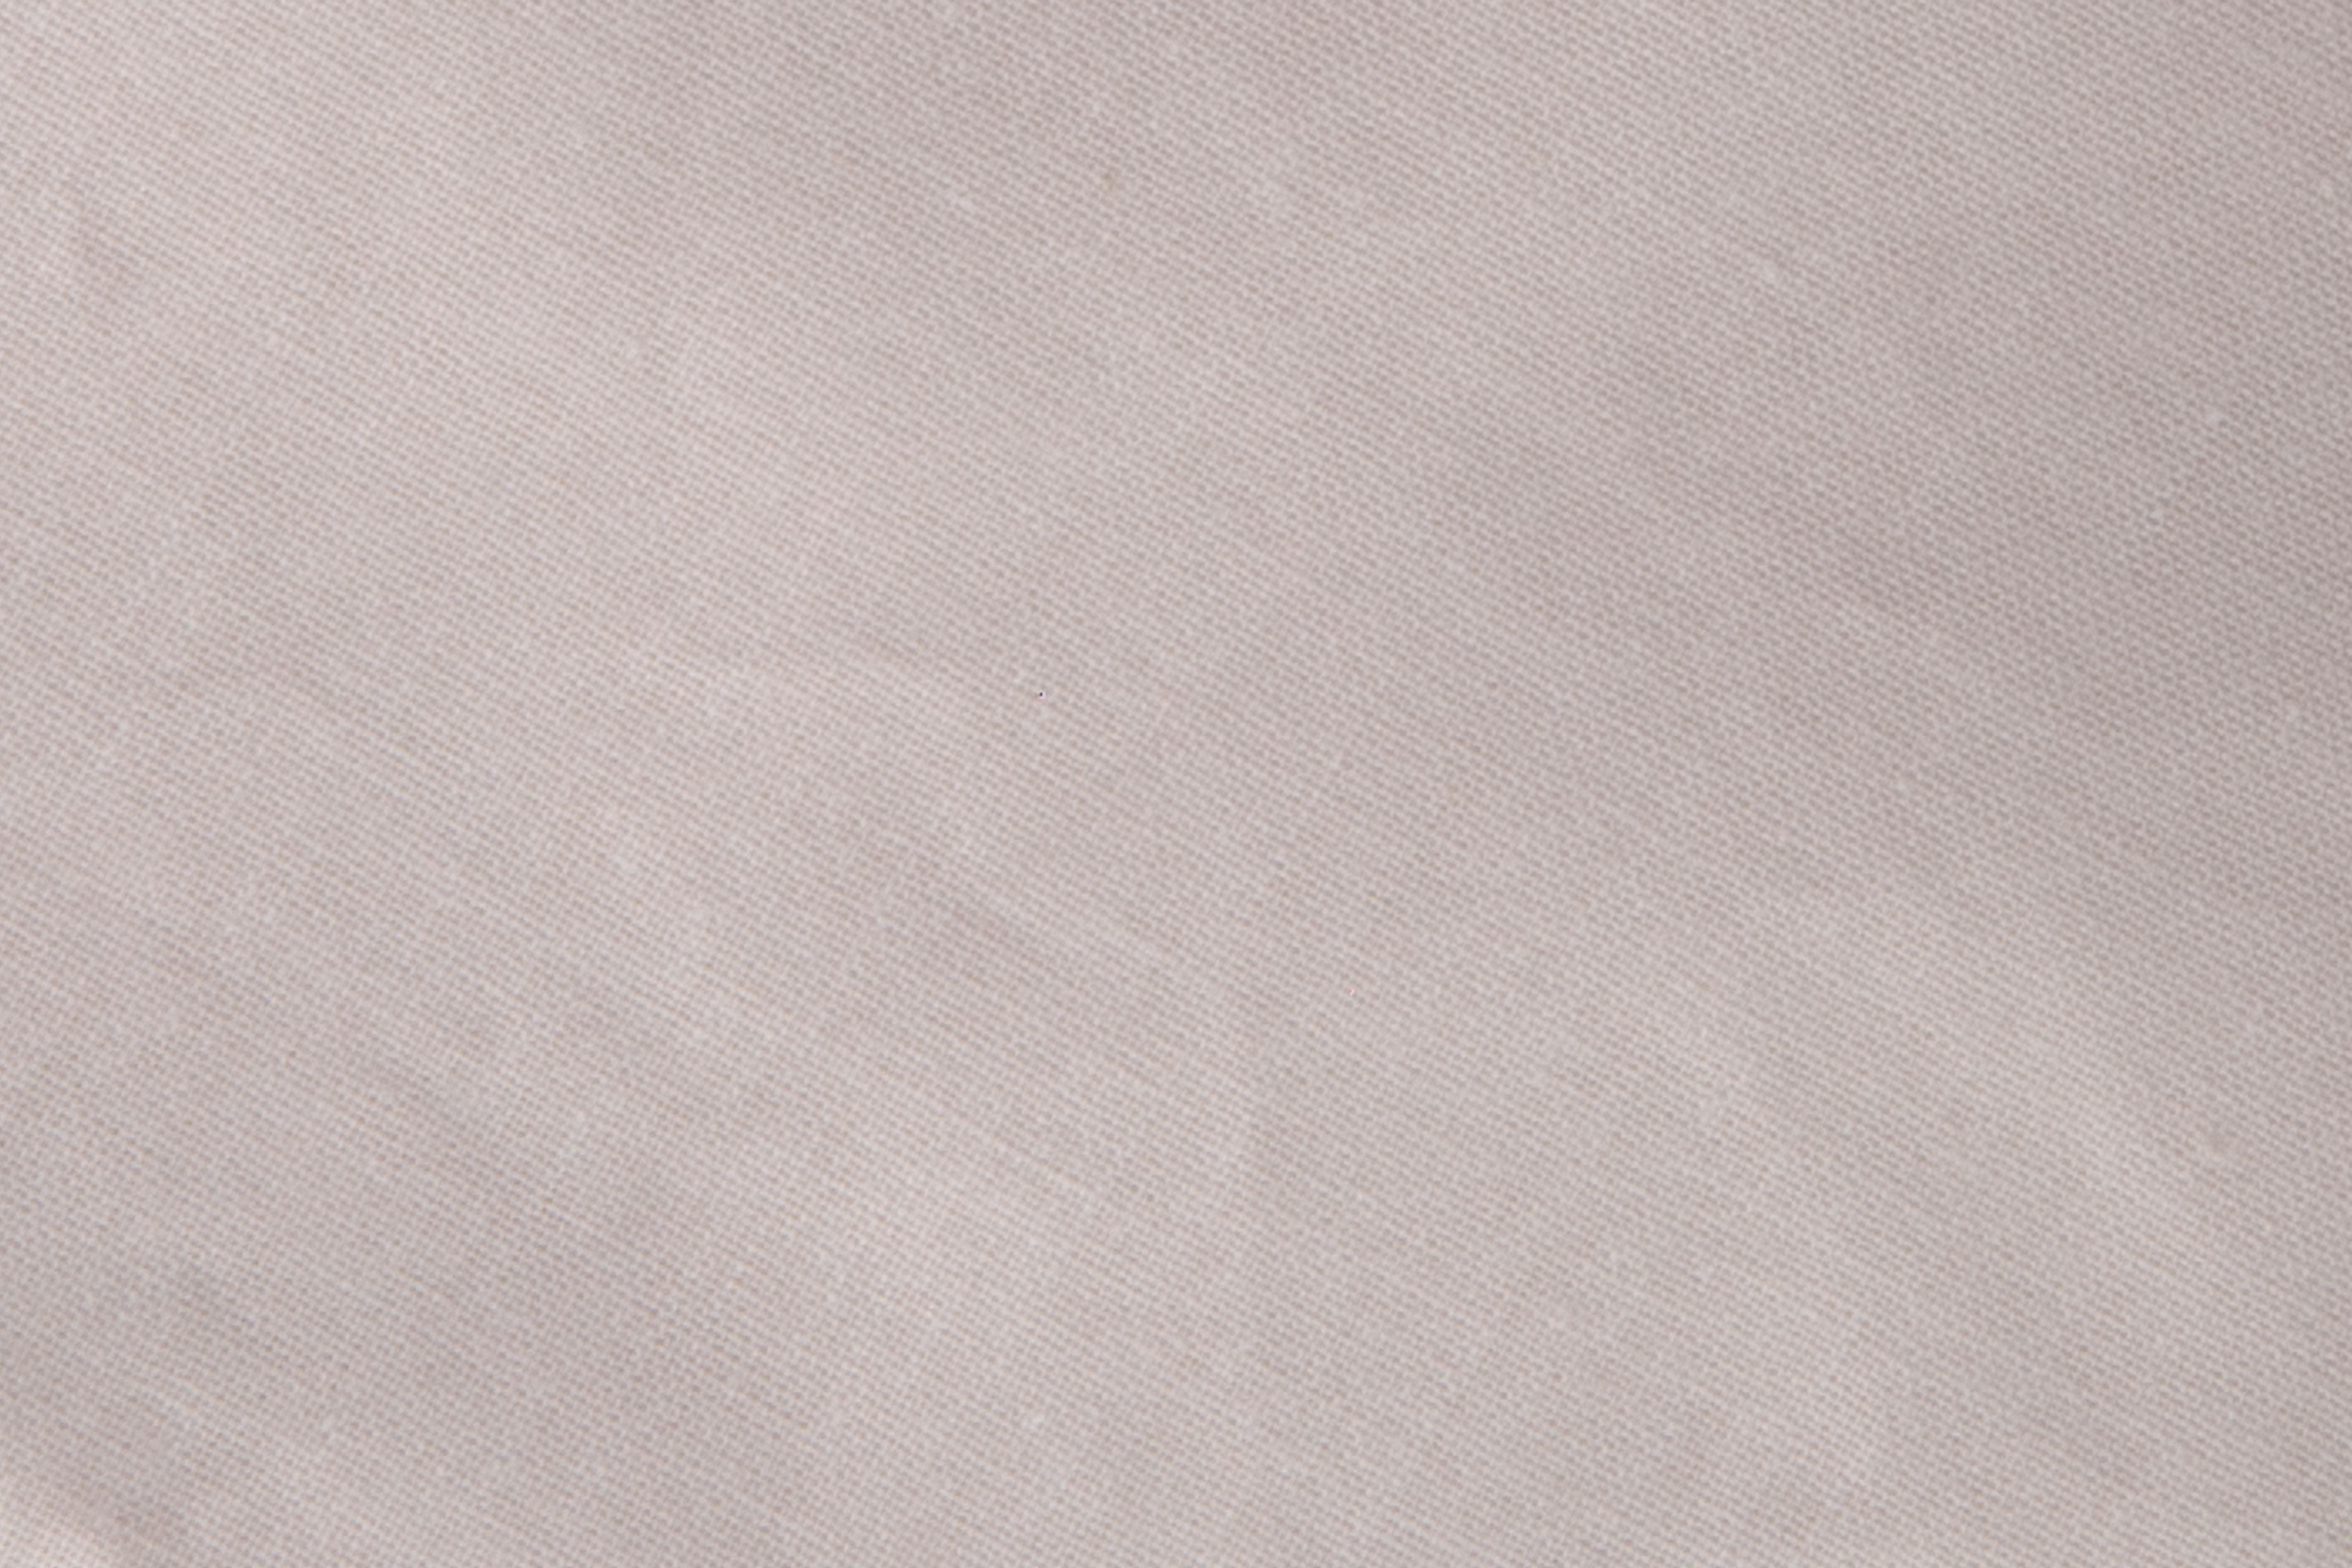 Completo letto lenzuola federe bifaccia double face stampa digitale in cotone made in italy FIORELLINI/PANNA